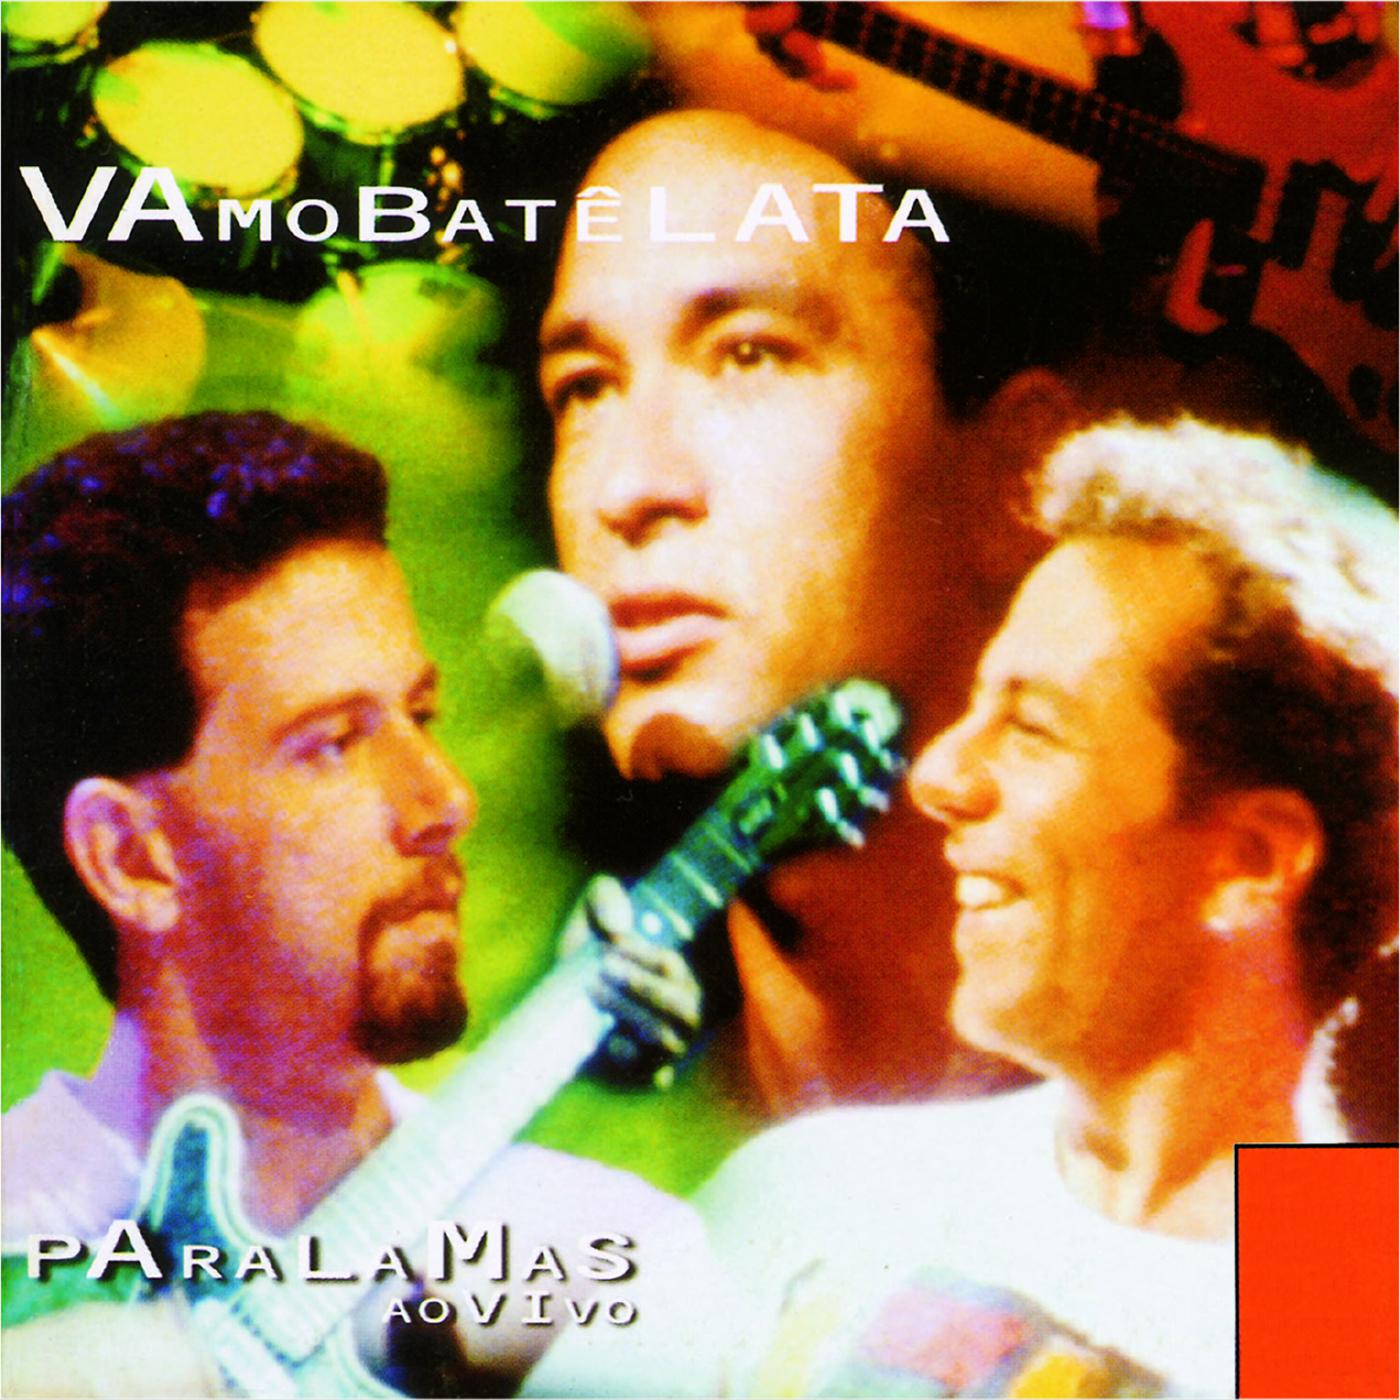 Альбом Vamo Batê Lata - Paralamas Ao Vivo исполнителя Os Paralamas do Sucesso